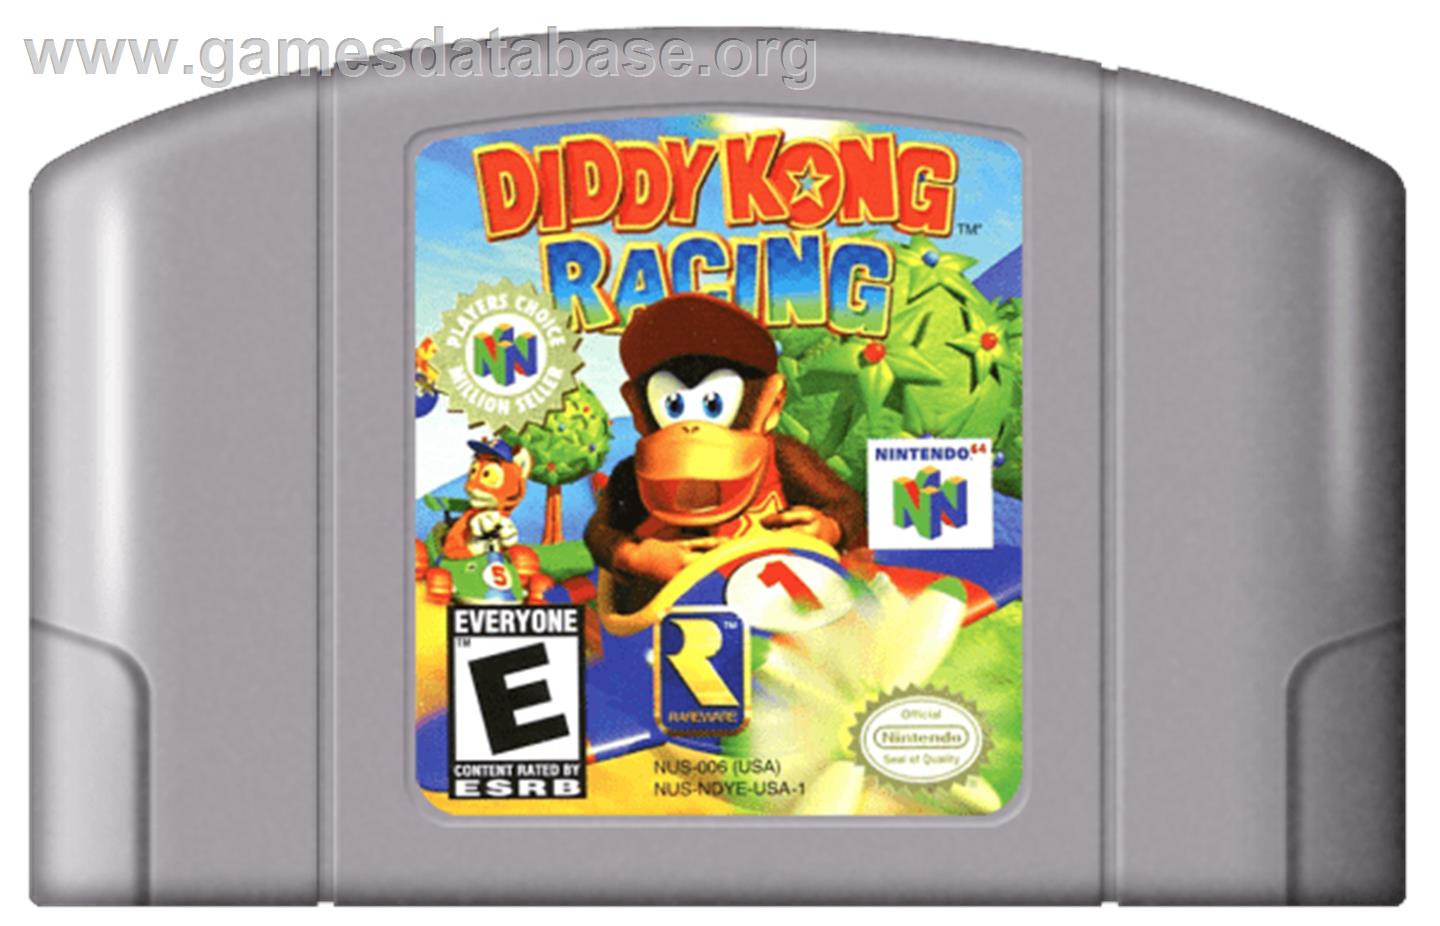 Diddy Kong Racing - Nintendo N64 - Artwork - Cartridge